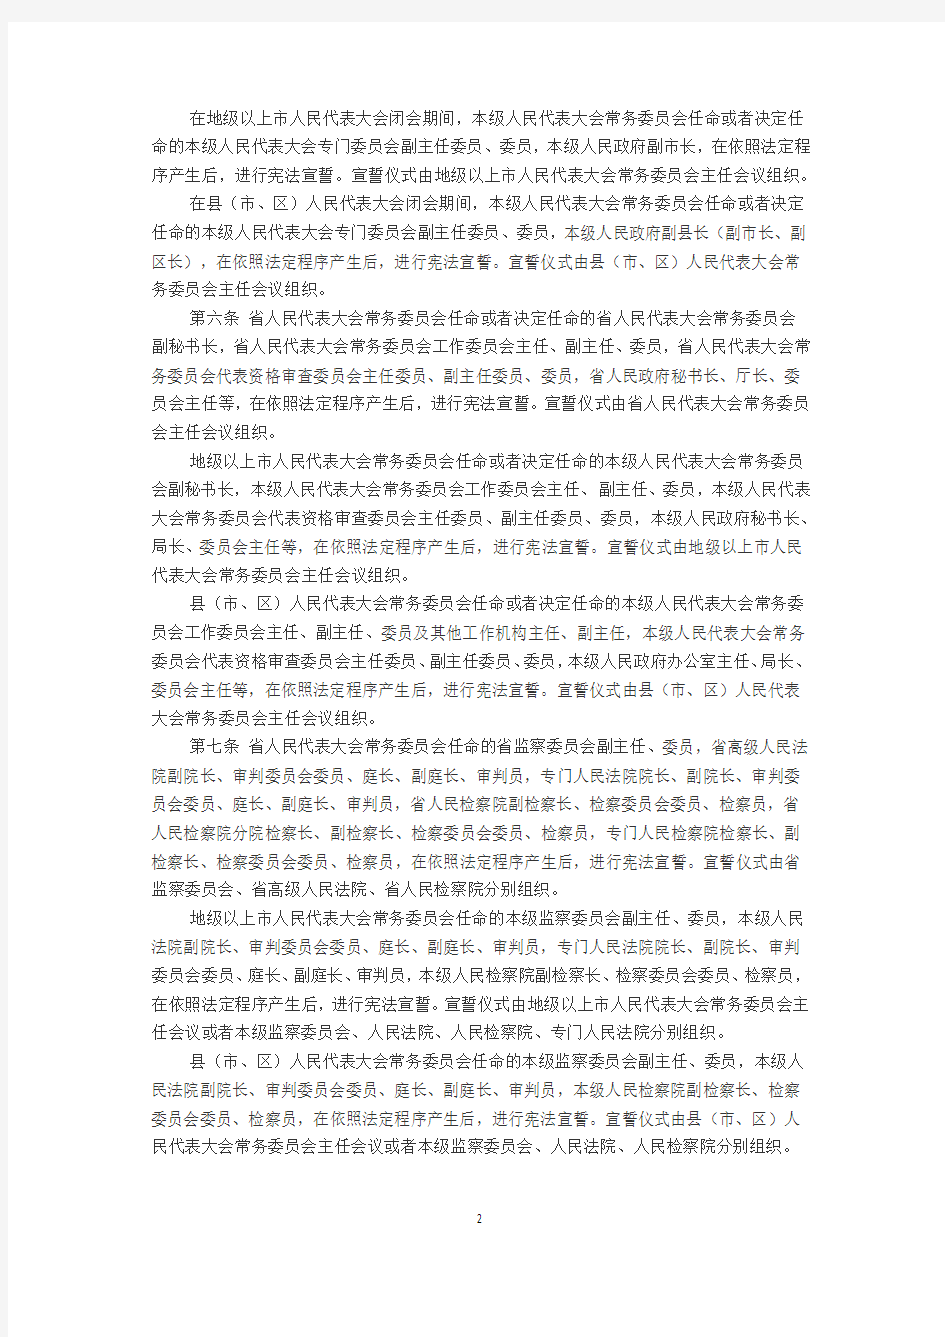 广东省实施宪法宣誓制度办法